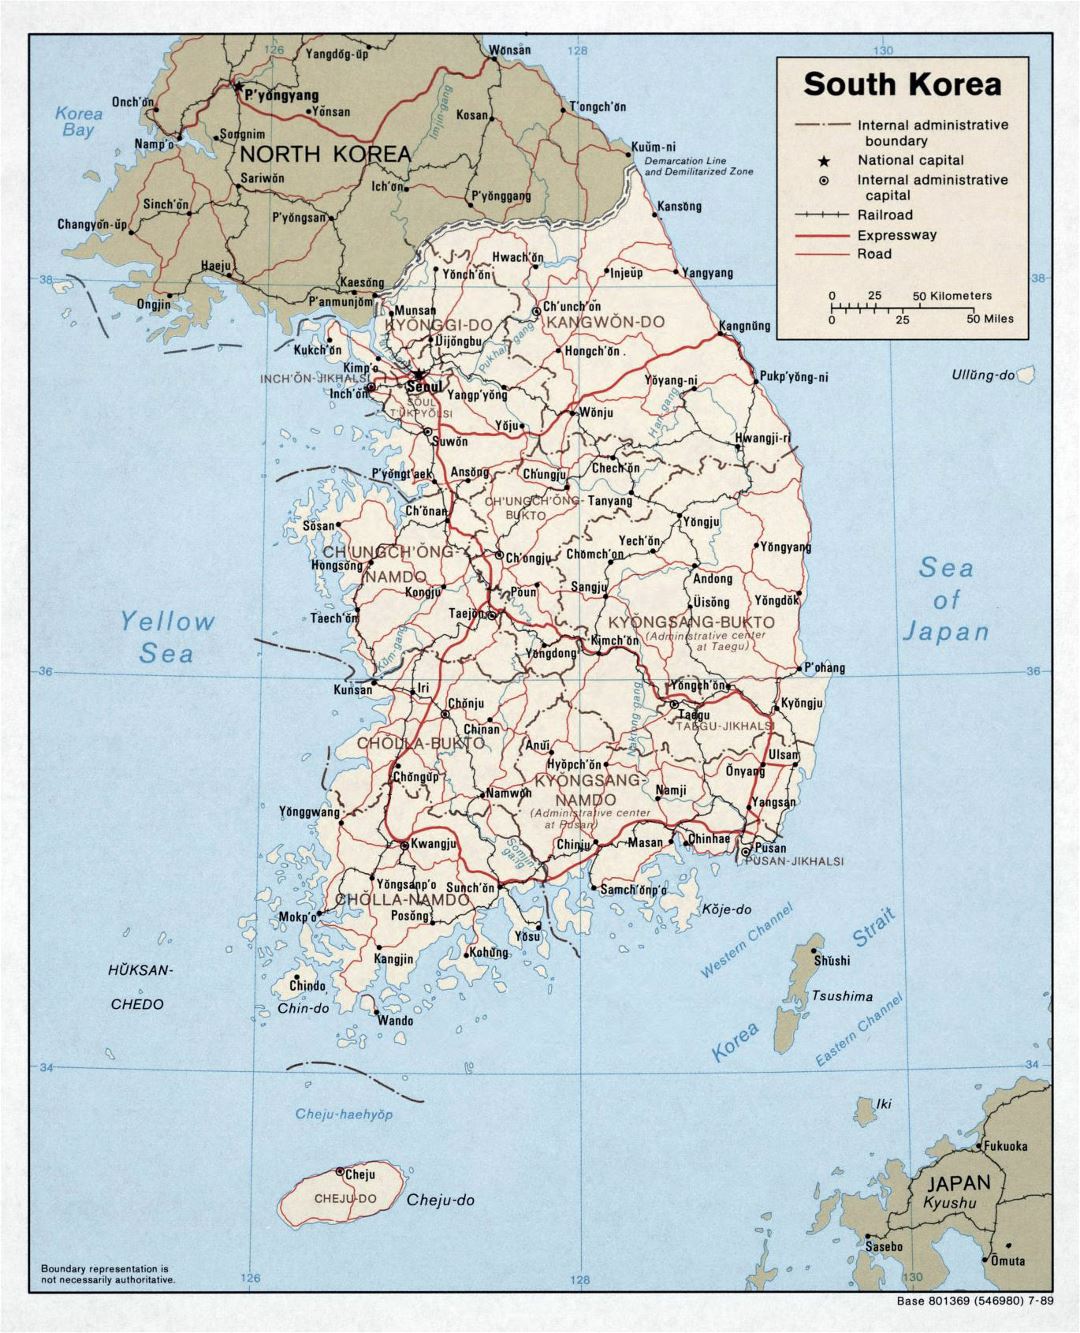 Grande mapa político y administrativo de Corea del Sur con carreteras, ferrocarriles y principales ciudades - 1989